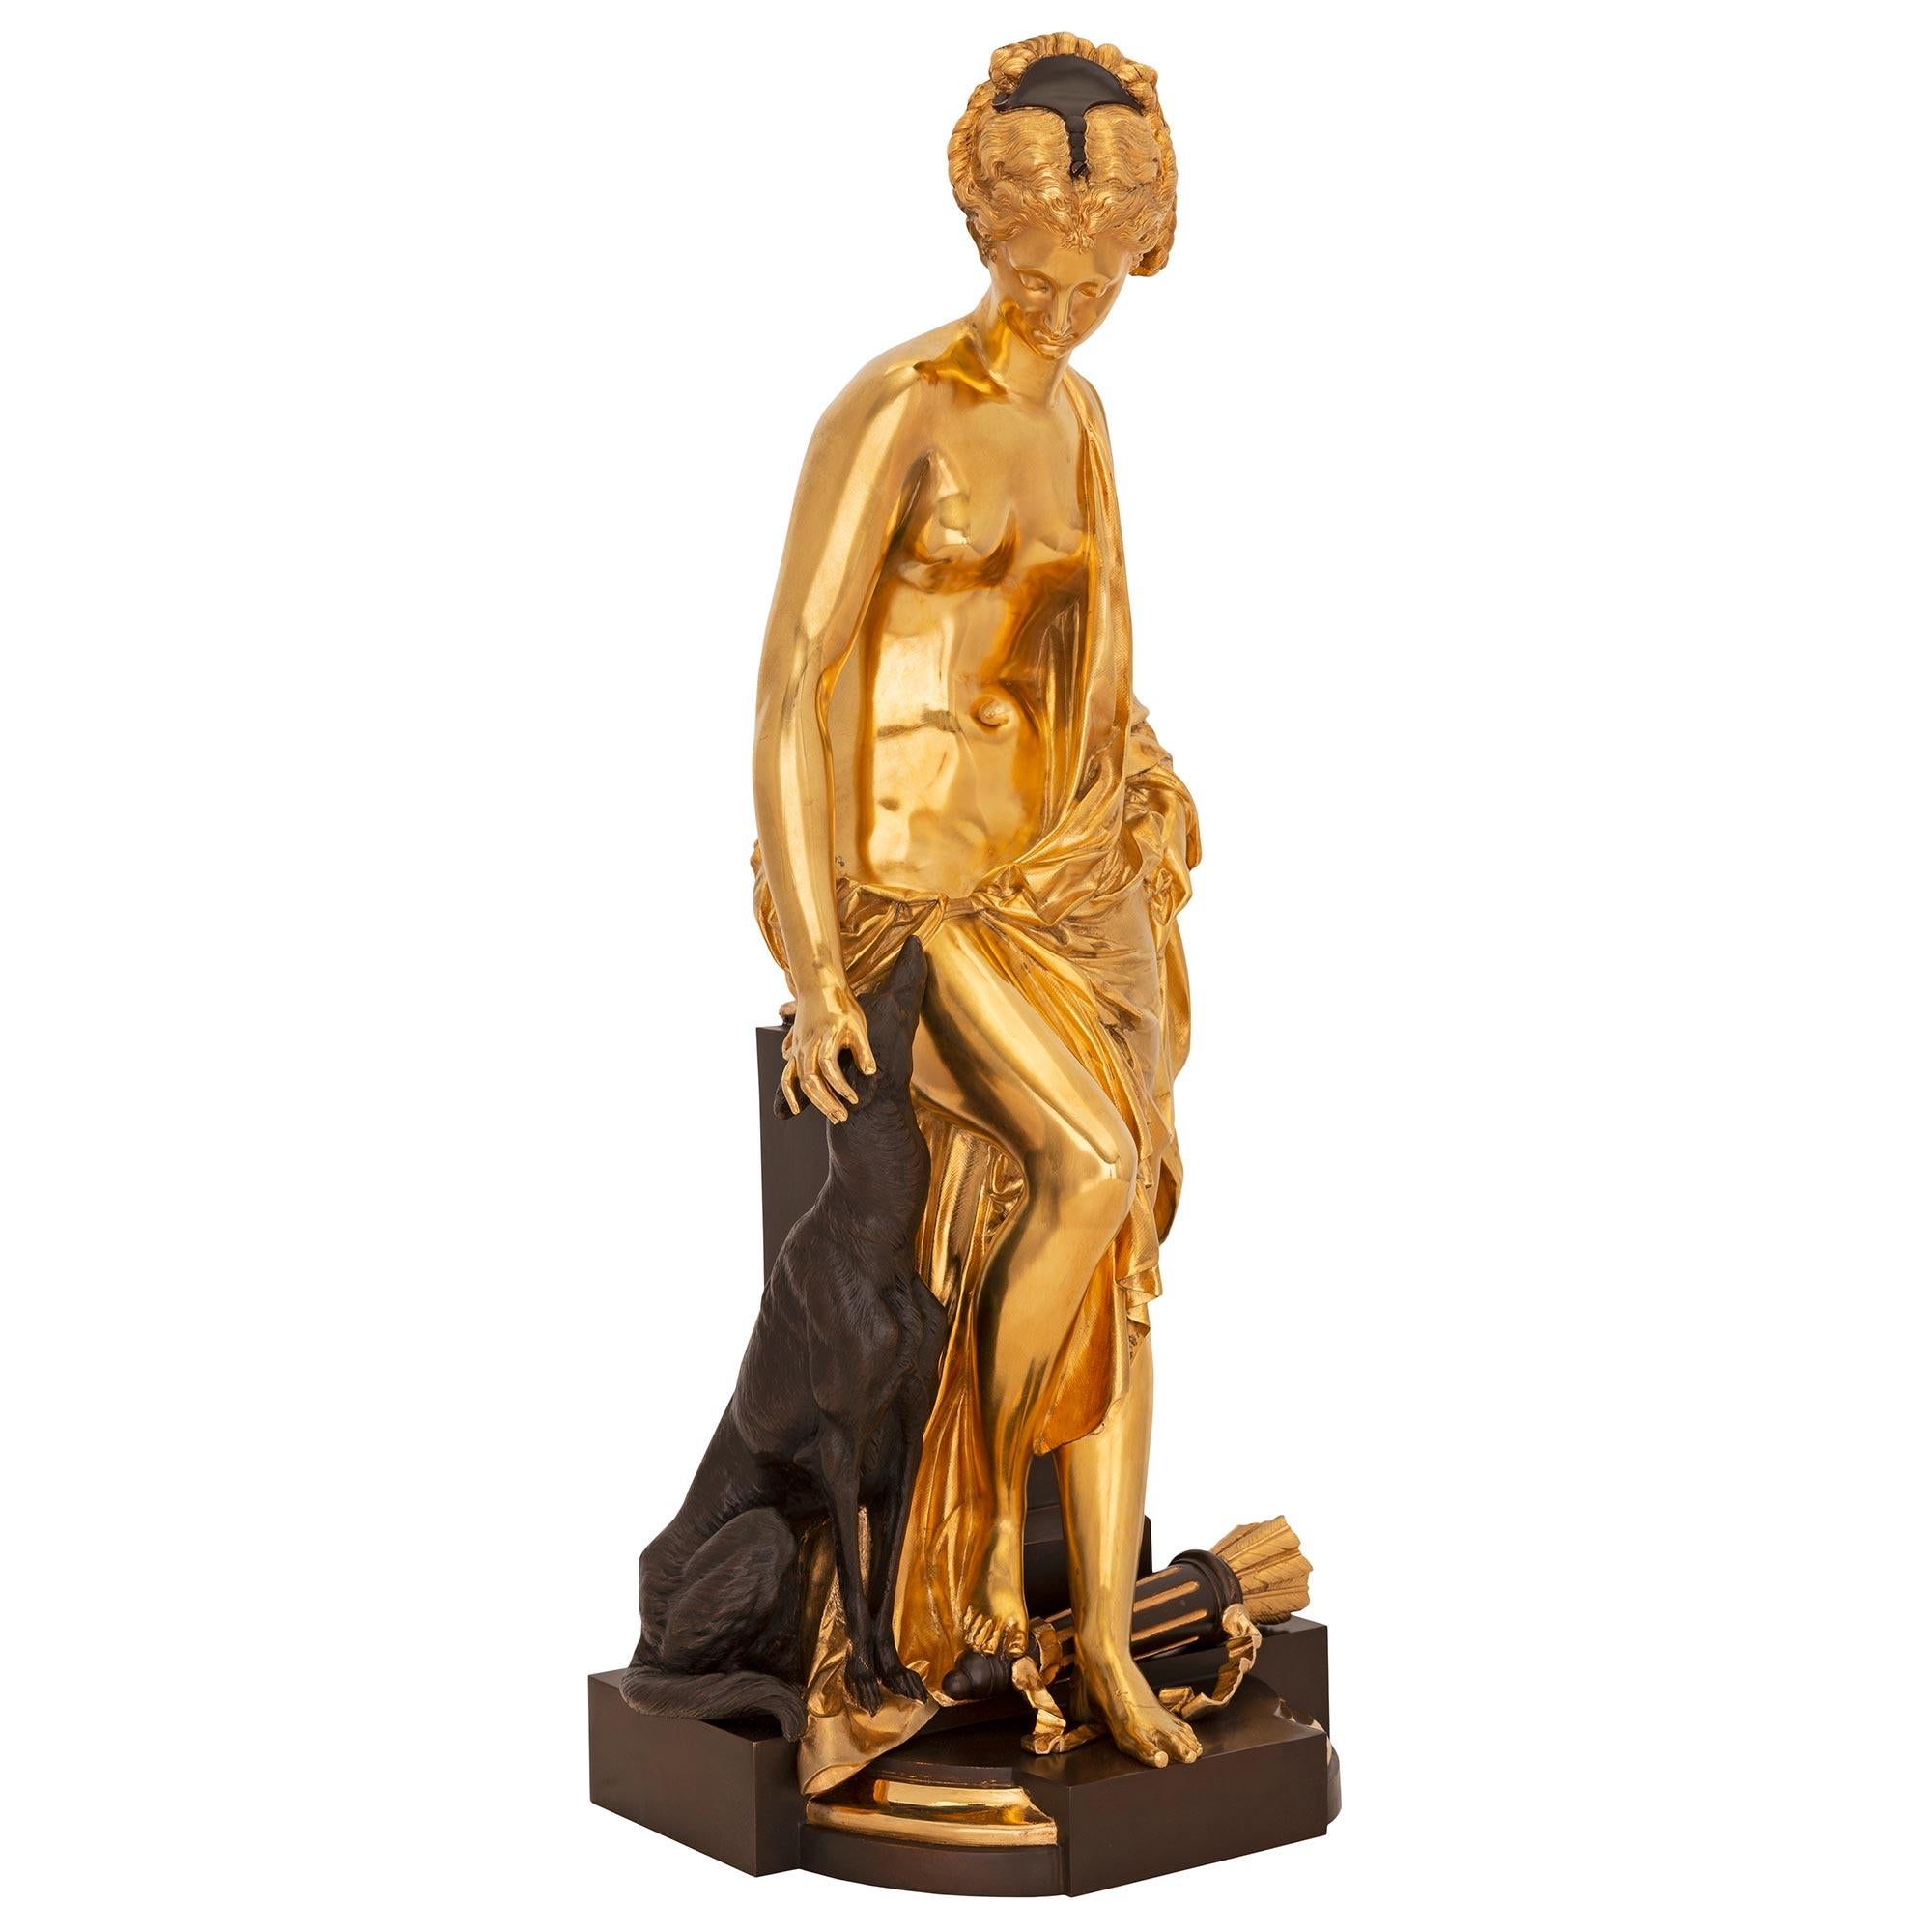 Une élégante statue de Diane et son chien en bronze patiné et bronze doré de style Louis XVI du XIXe siècle, signée A. Carrier. La statue est surmontée d'une base très décorative avec des motifs en bloc et une fine bordure tachetée. Au centre, la